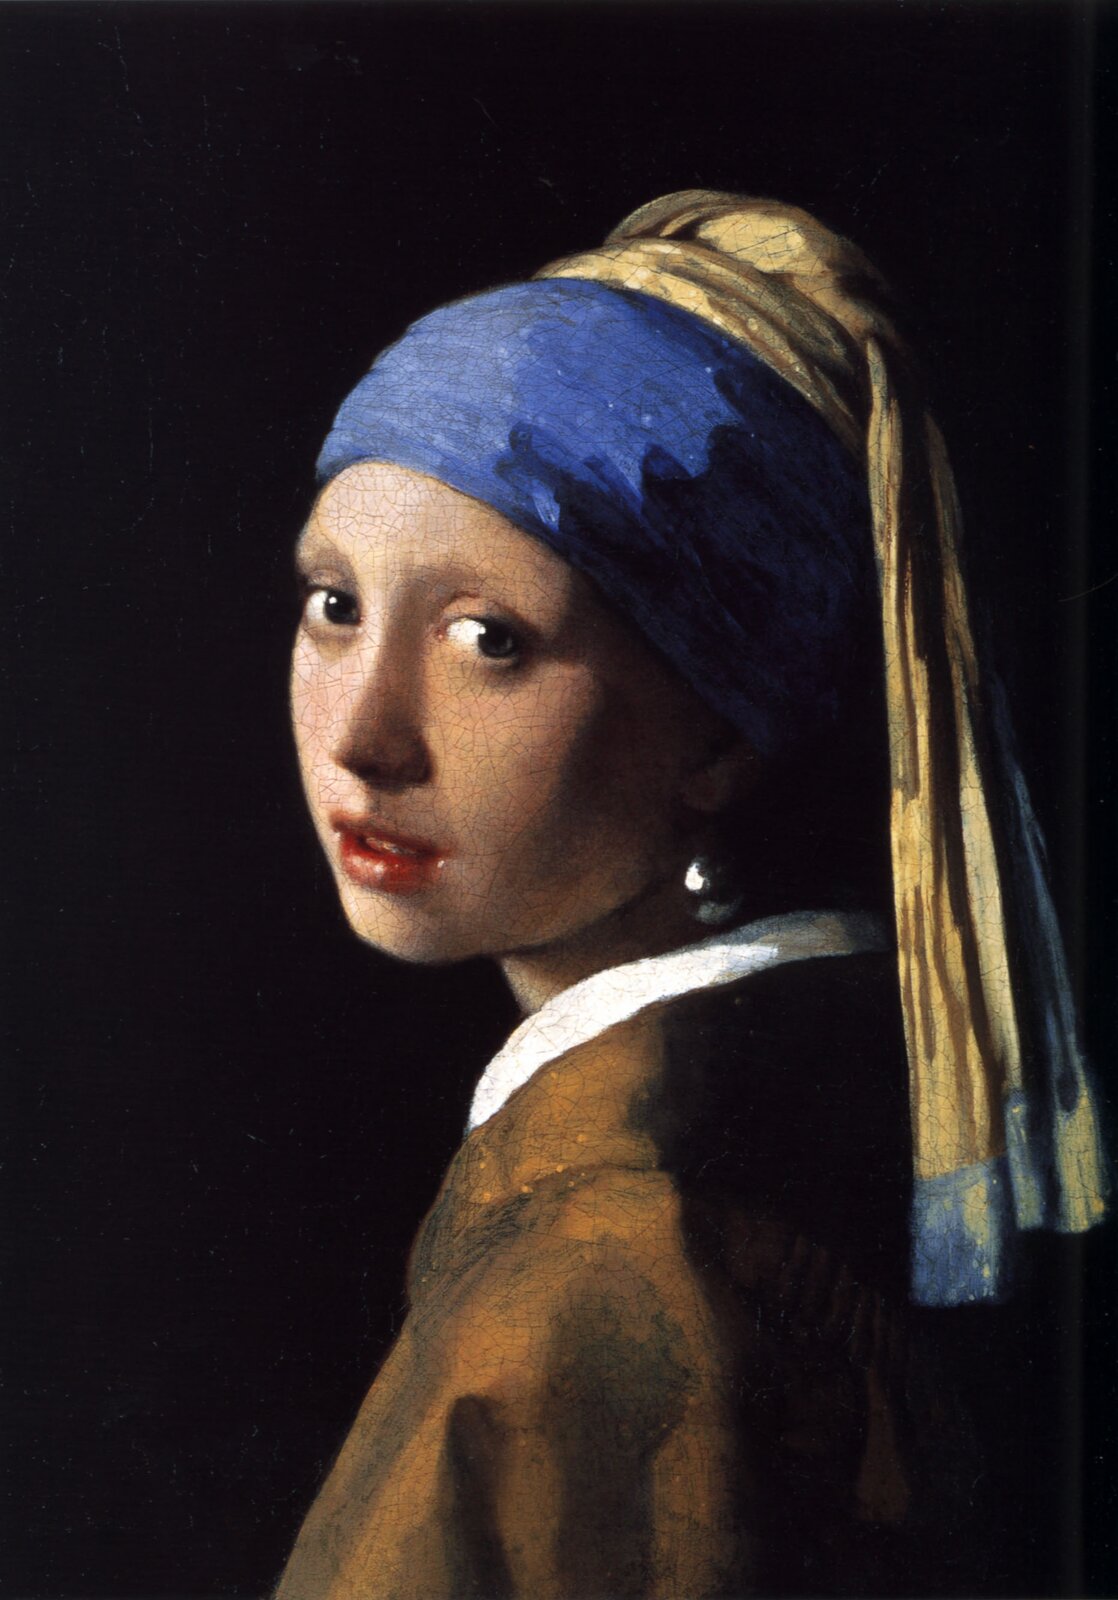 Dziewczyna z perłą Źródło: Jan Vermeer, Dziewczyna z perłą, ok. 1665, olej na płótnie, Royal Picture Gallery Mauritshuis, Holandia, domena publiczna.